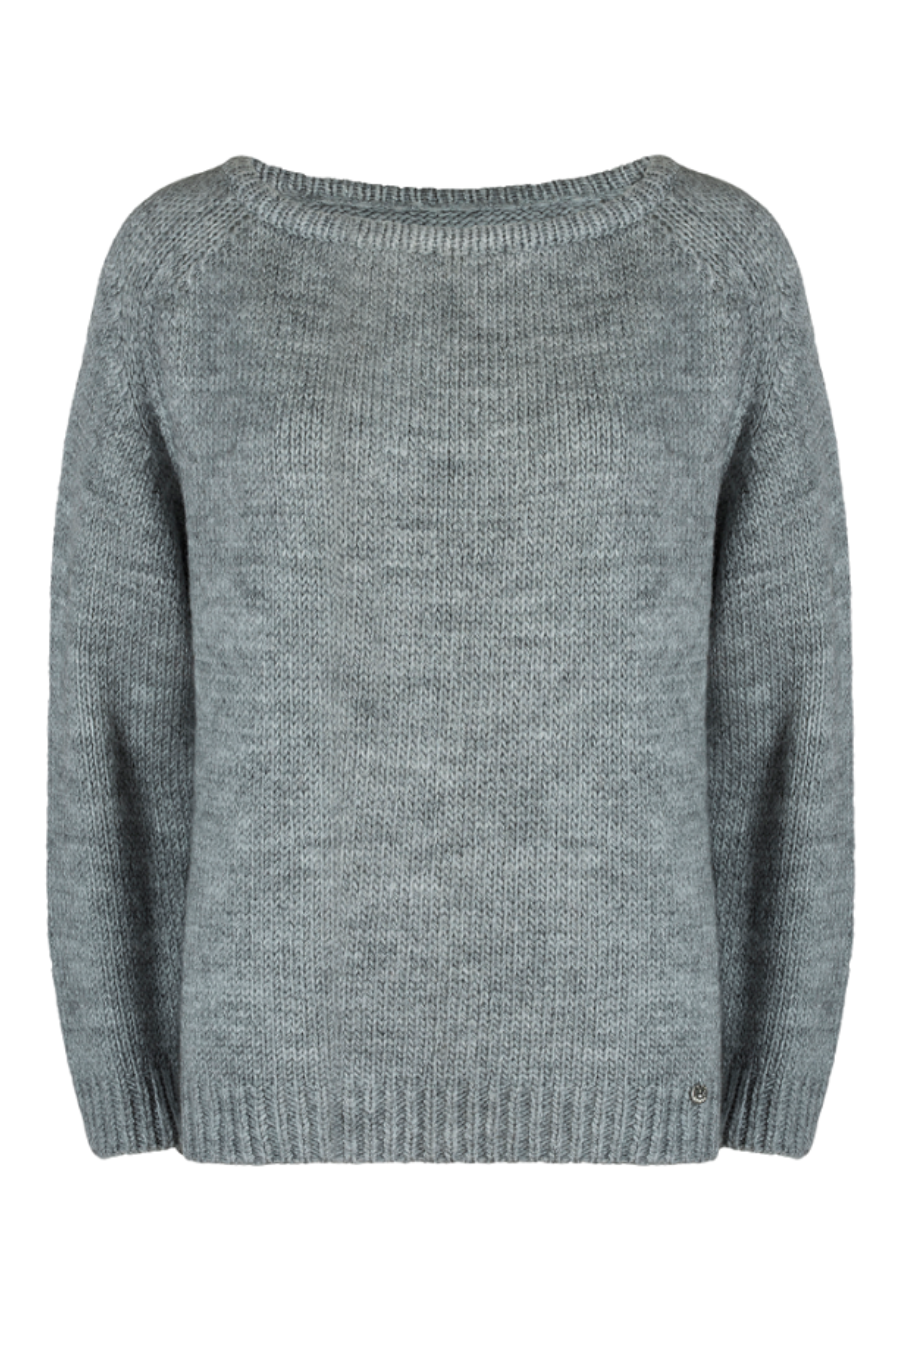 Kamea Woman's Sweater K.21.603.06